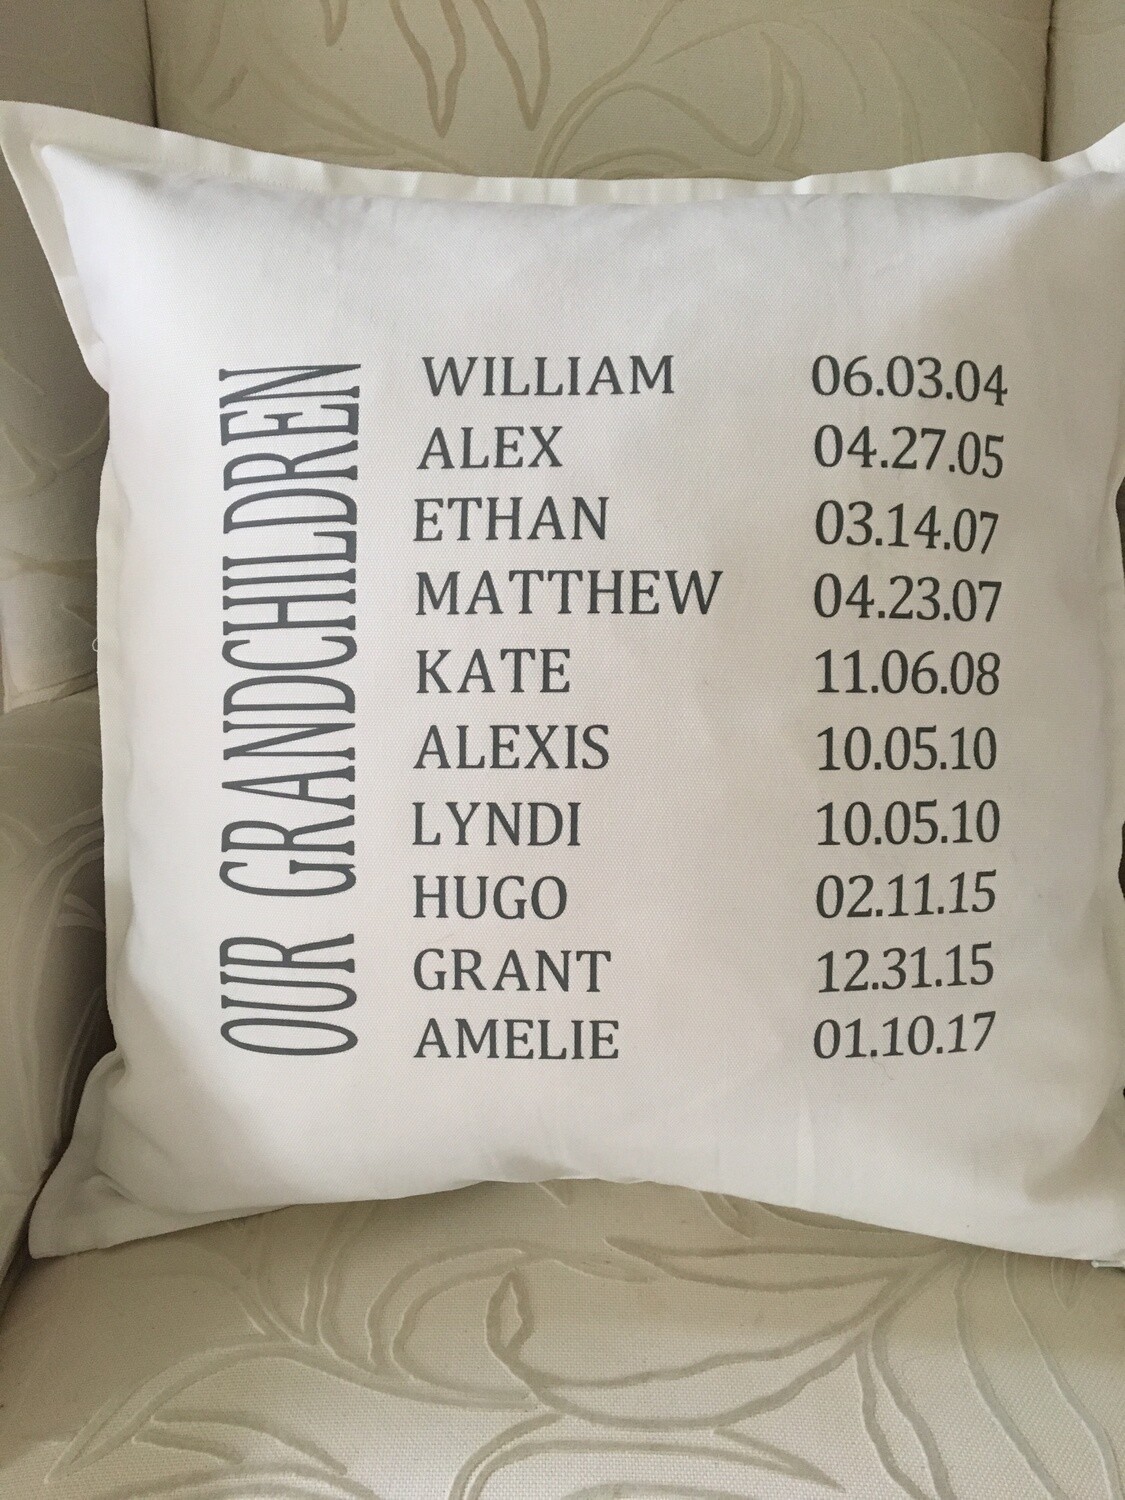 Grandchildren Pillow